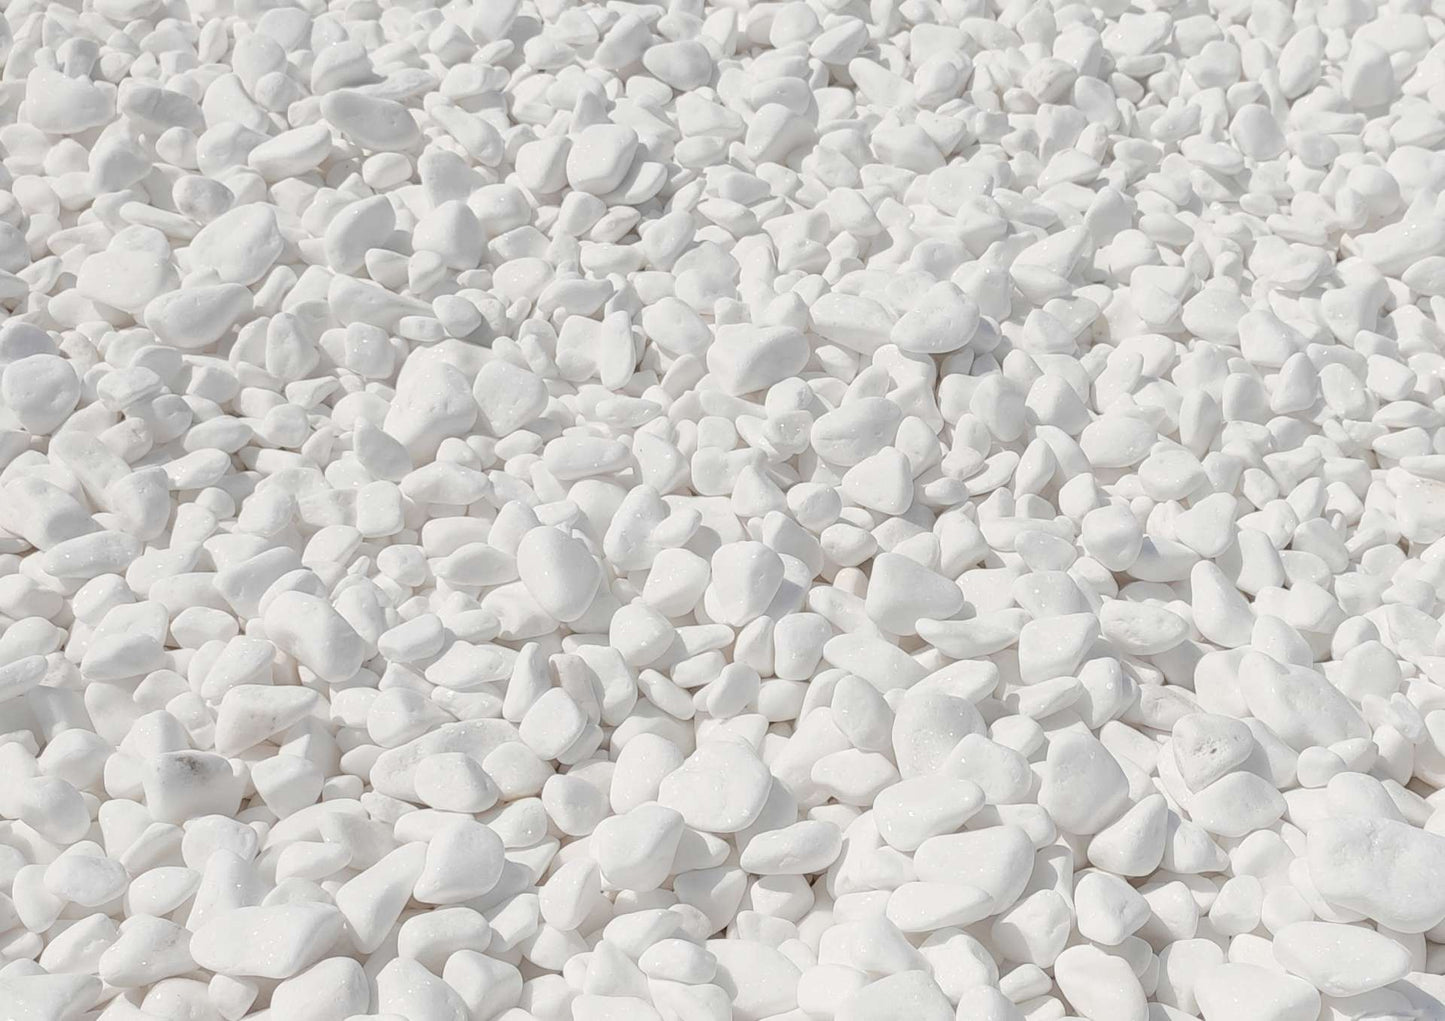 25 Kilo Thassos White Greek stone pebbles